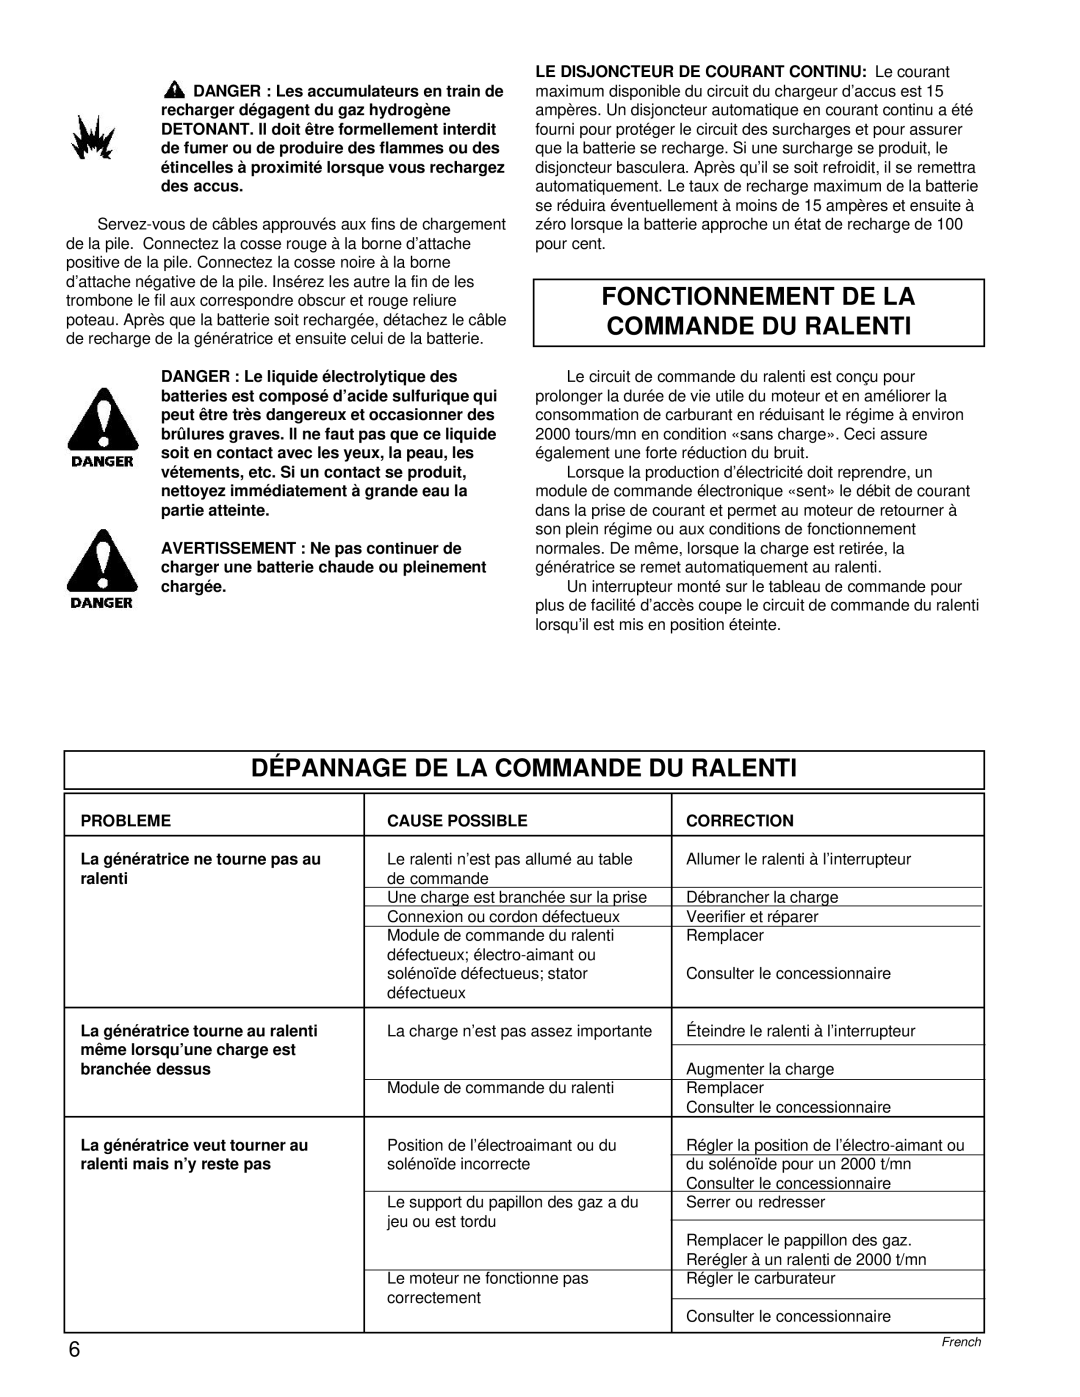 Powermate PL0496504.17 manual Fonctionnement De La Commande Du Ralenti, Dépannage De La Commande Du Ralenti 